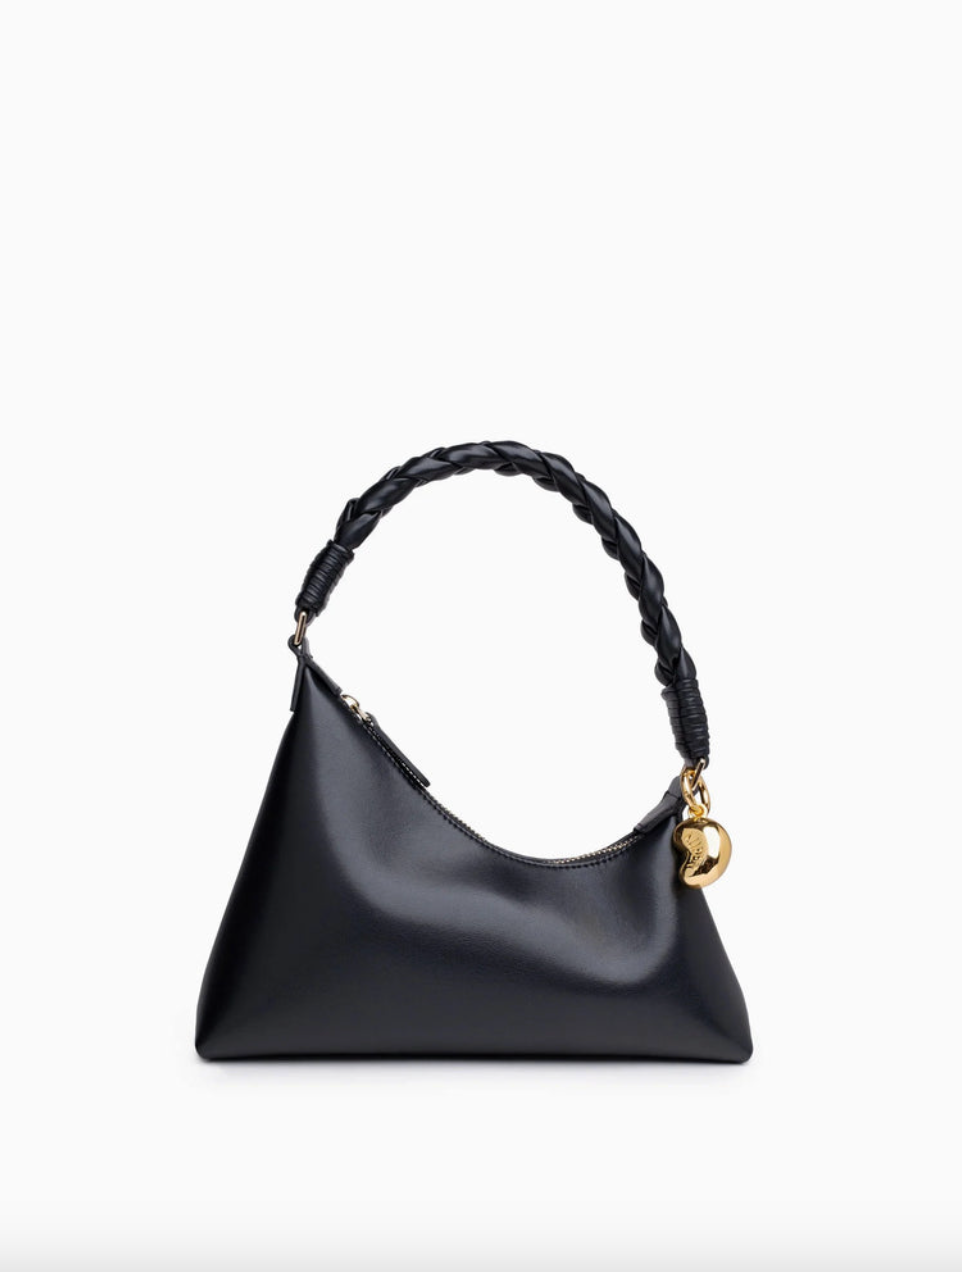 Tessa Crushed Shoulder Bag - Black Online Shopping - JW Pei